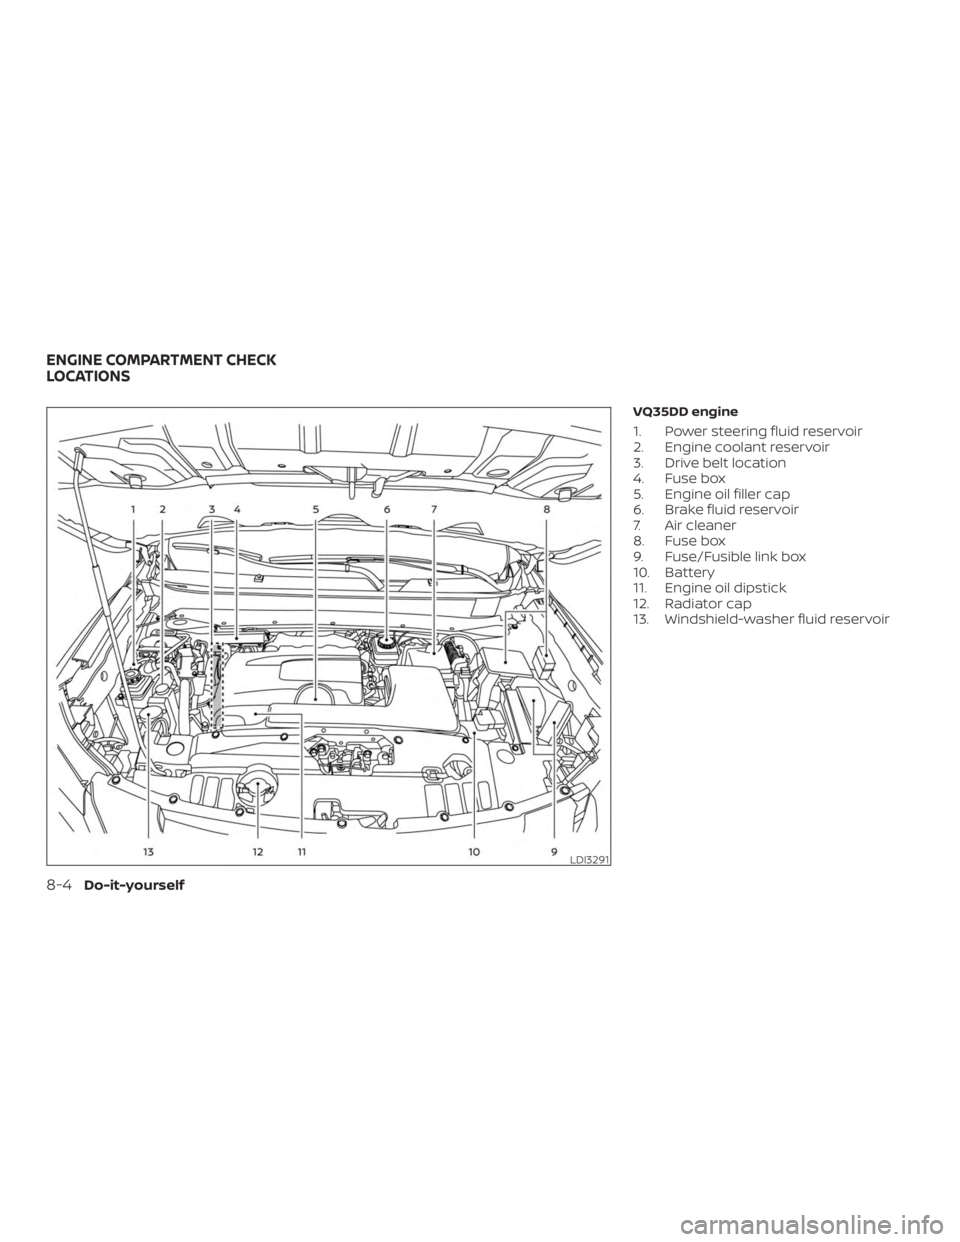 NISSAN PATHFINDER 2020  Owner´s Manual VQ35DD engine
1. Power steering fluid reservoir
2. Engine coolant reservoir
3. Drive belt location
4. Fuse box
5. Engine oil filler cap
6. Brake fluid reservoir
7. Air cleaner
8. Fuse box
9. Fuse/Fusi